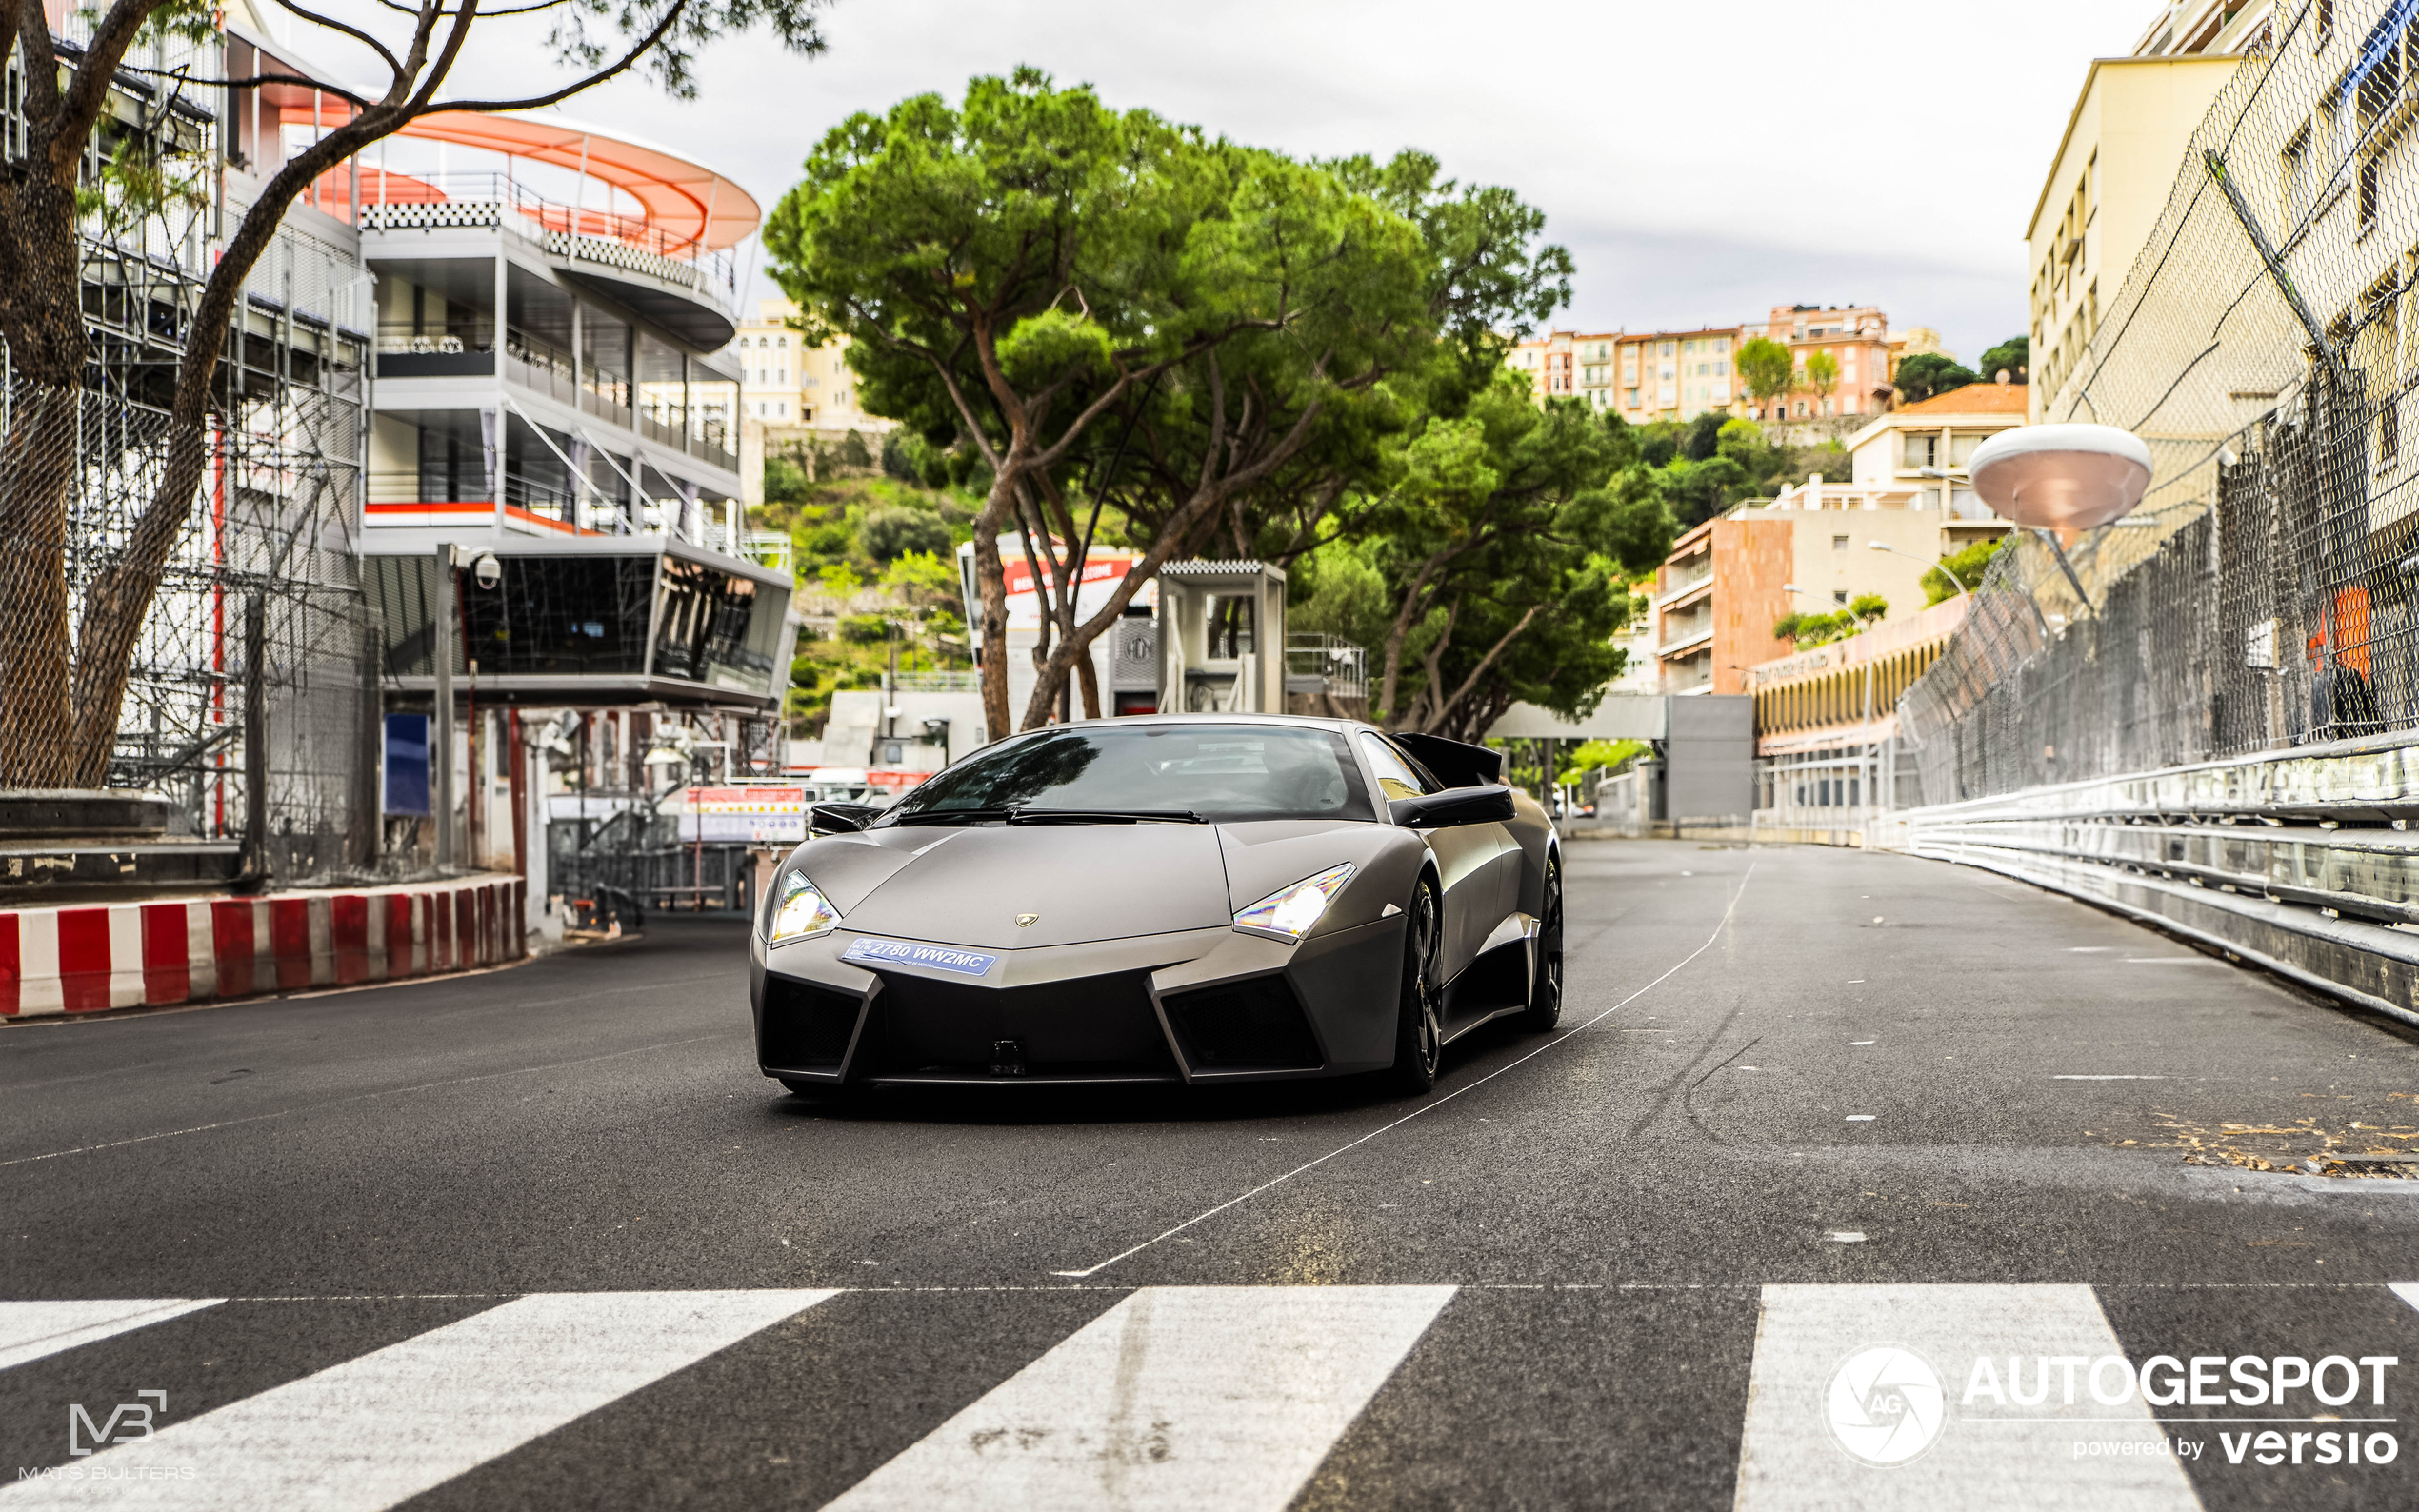 A Lamborghini Reventón shows up in Monaco